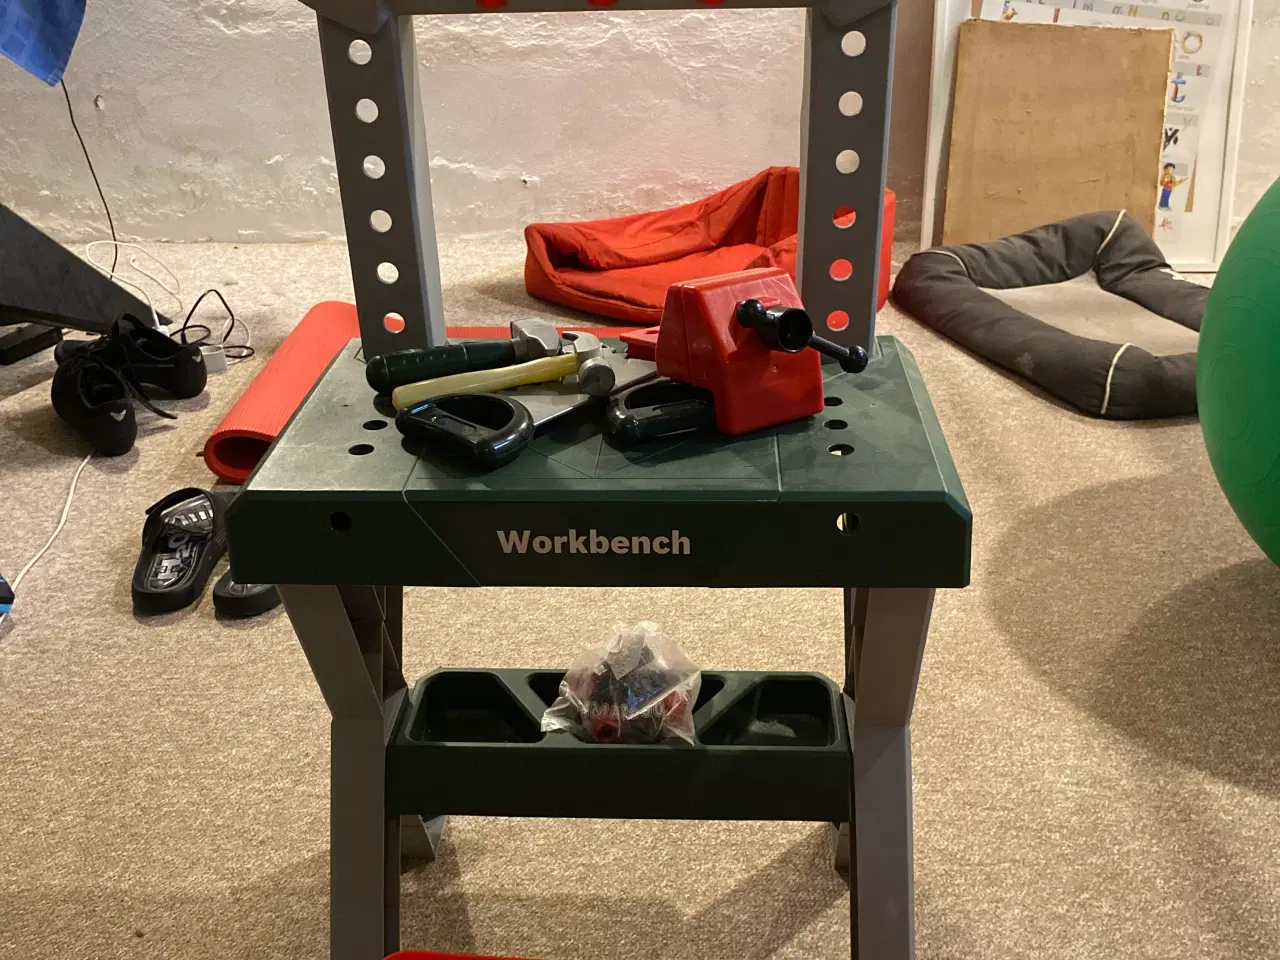 Billede 1 - Workbench fra Bosch inkl ekstra værktøj